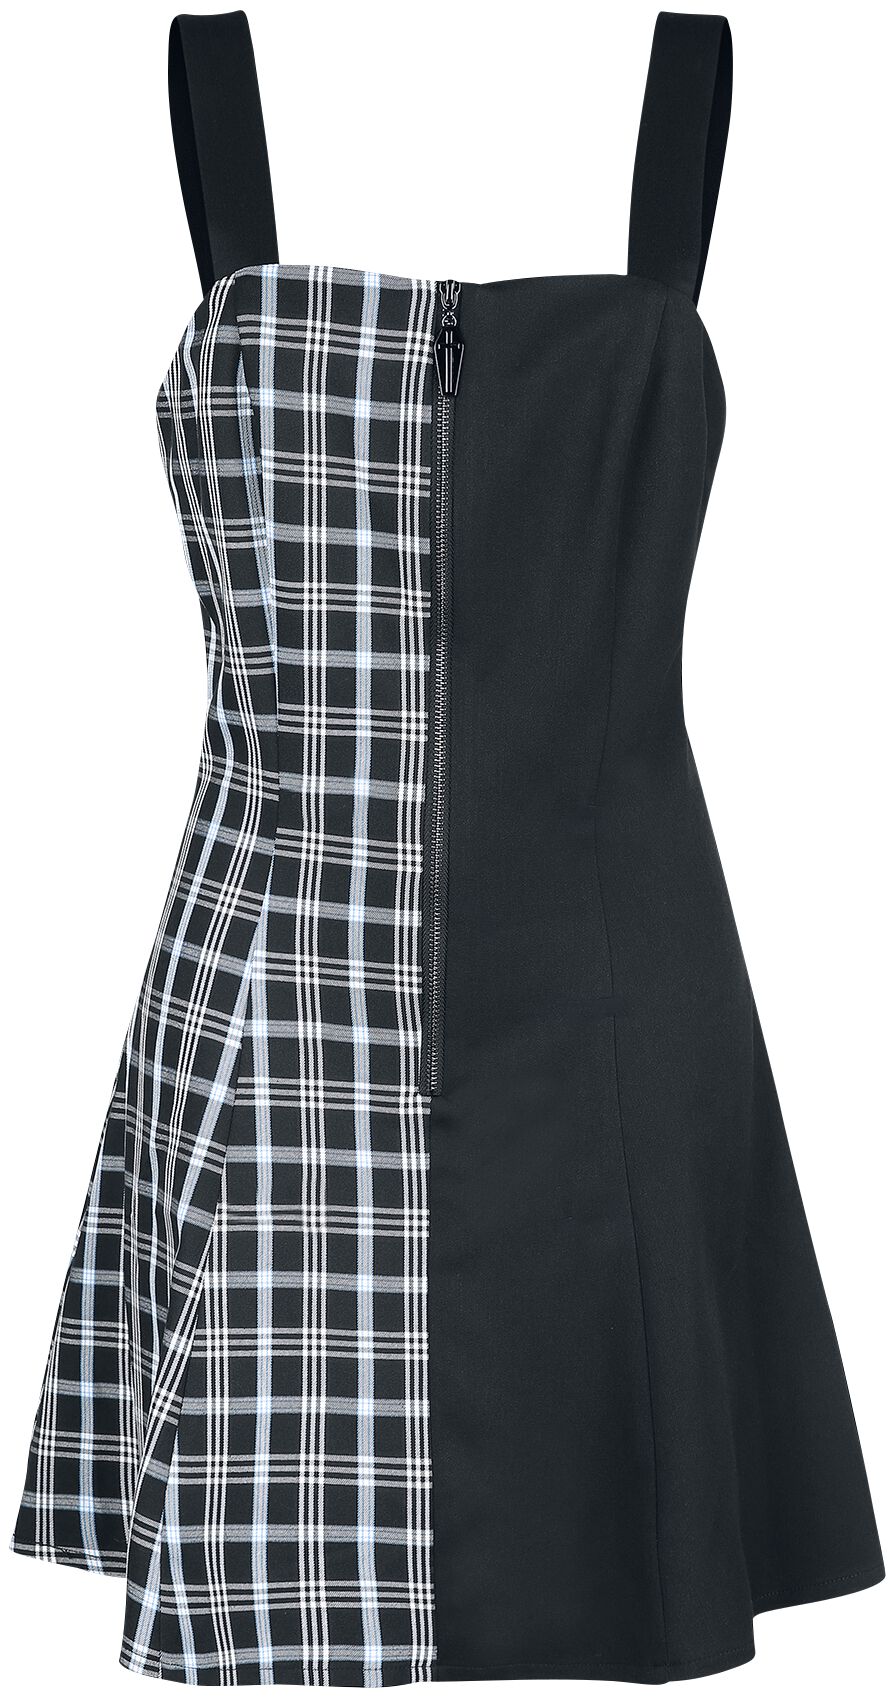 Banned Alternative - Gothic Kurzes Kleid - Death Check Dress - XS bis XXL - für Damen - Größe L - schwarz/blau